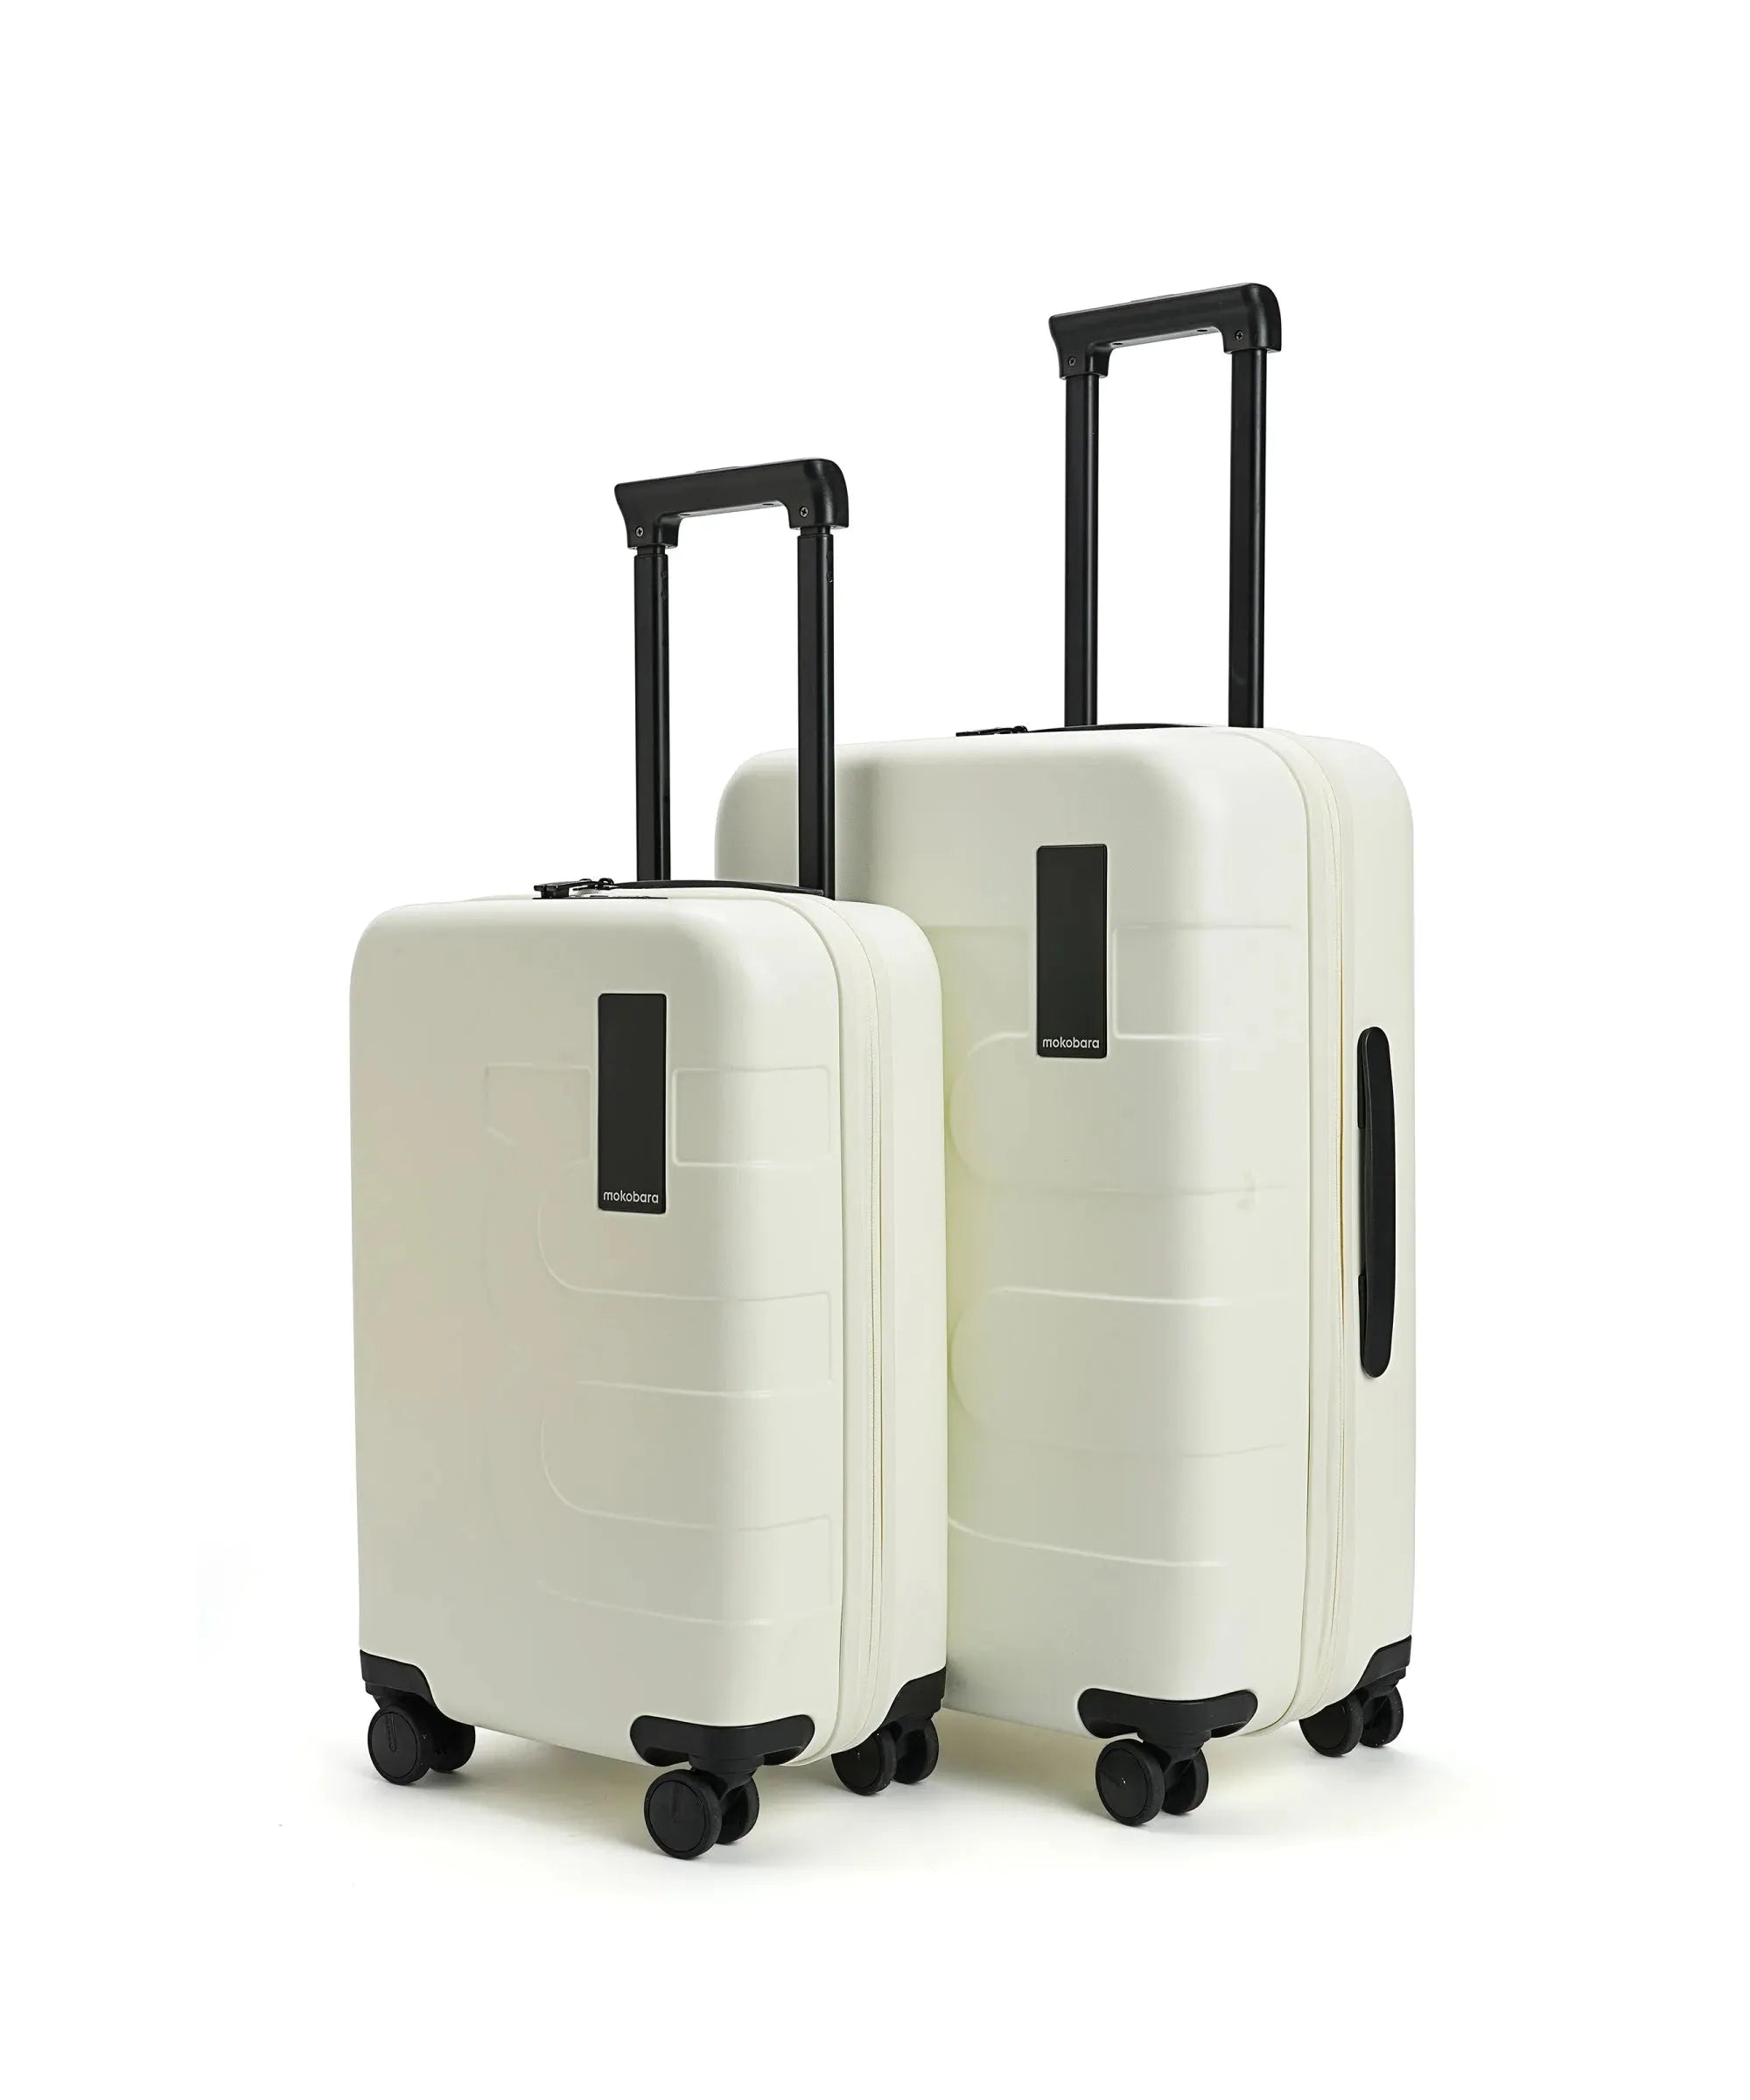 Color_Still Loading | The Em Set of 2 Luggage